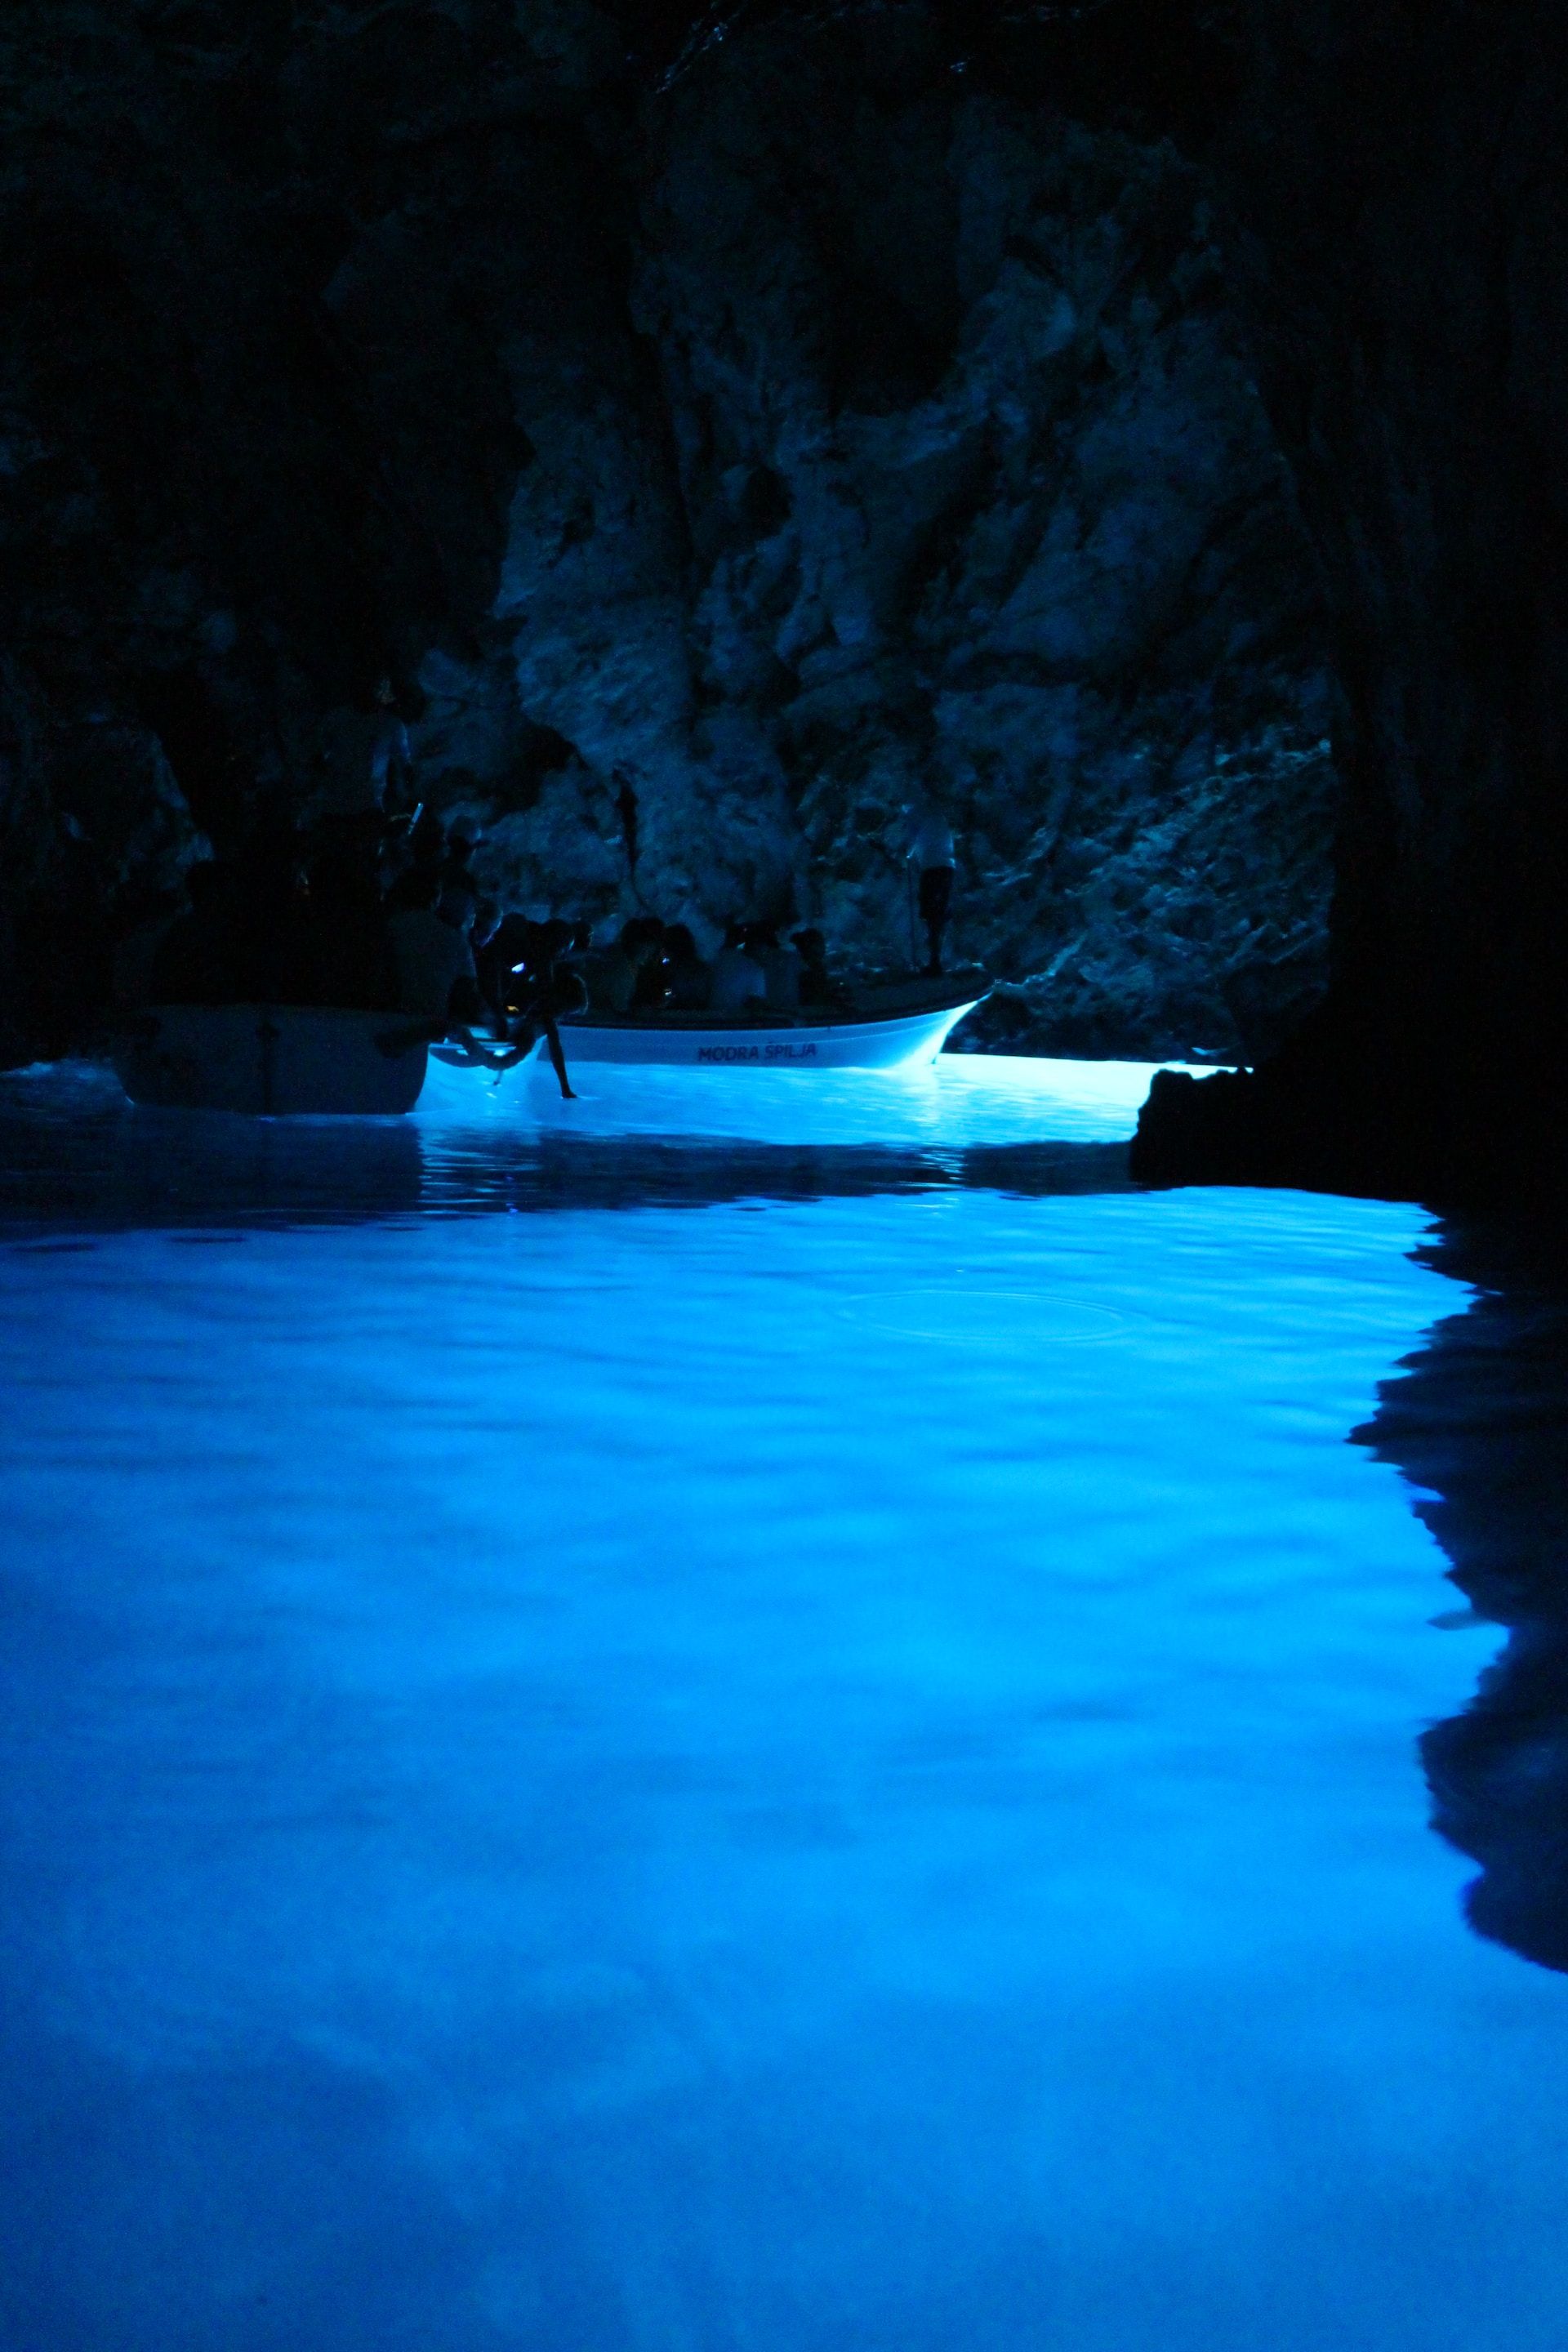 Caverna de mar azul alagado com um barco flutuando na água